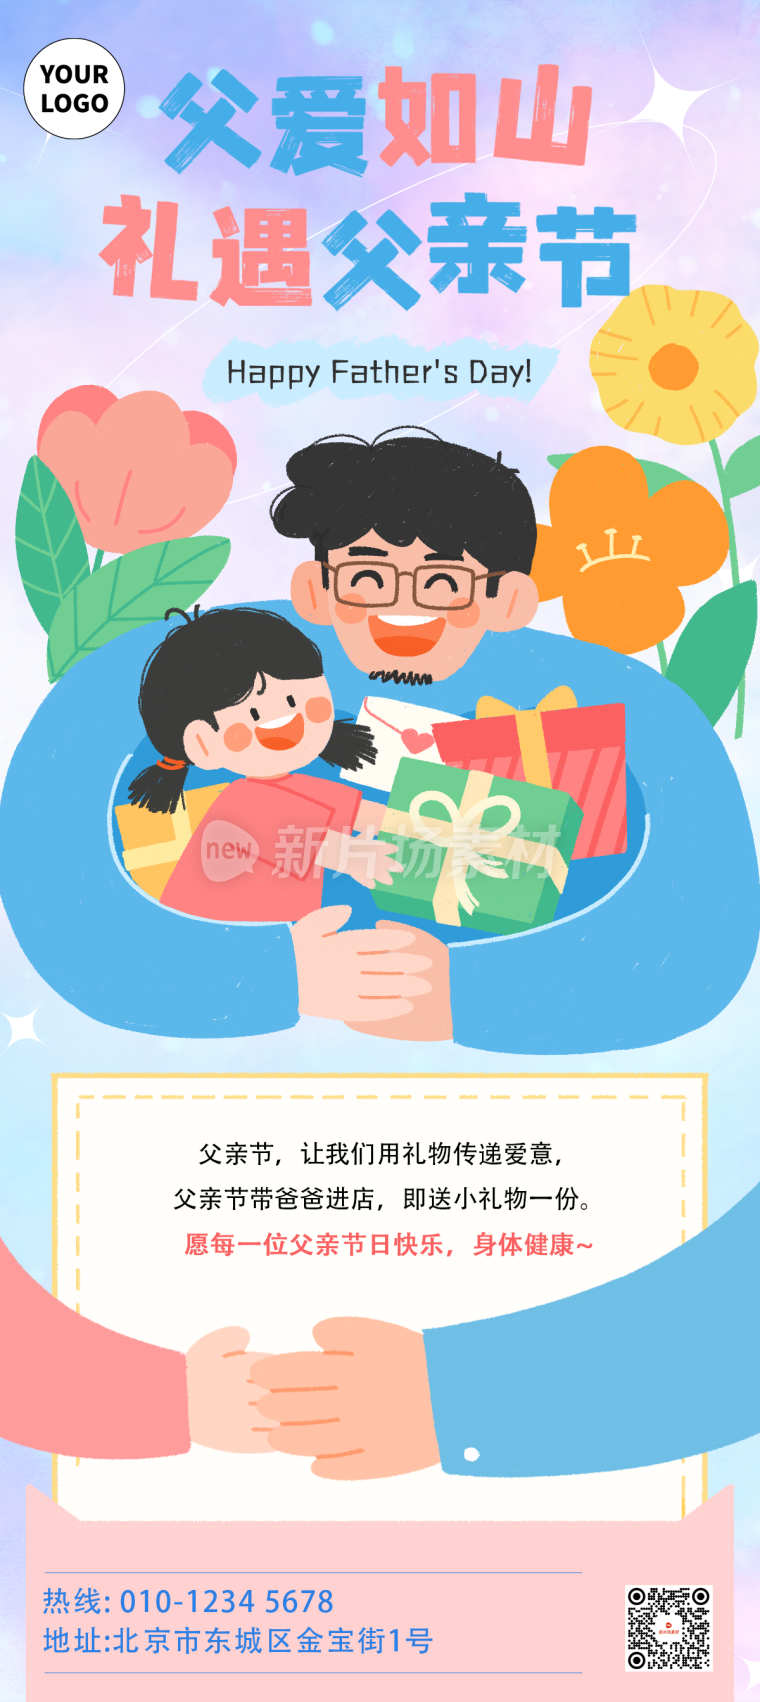 父亲节节日营销宣传长图海报简约风